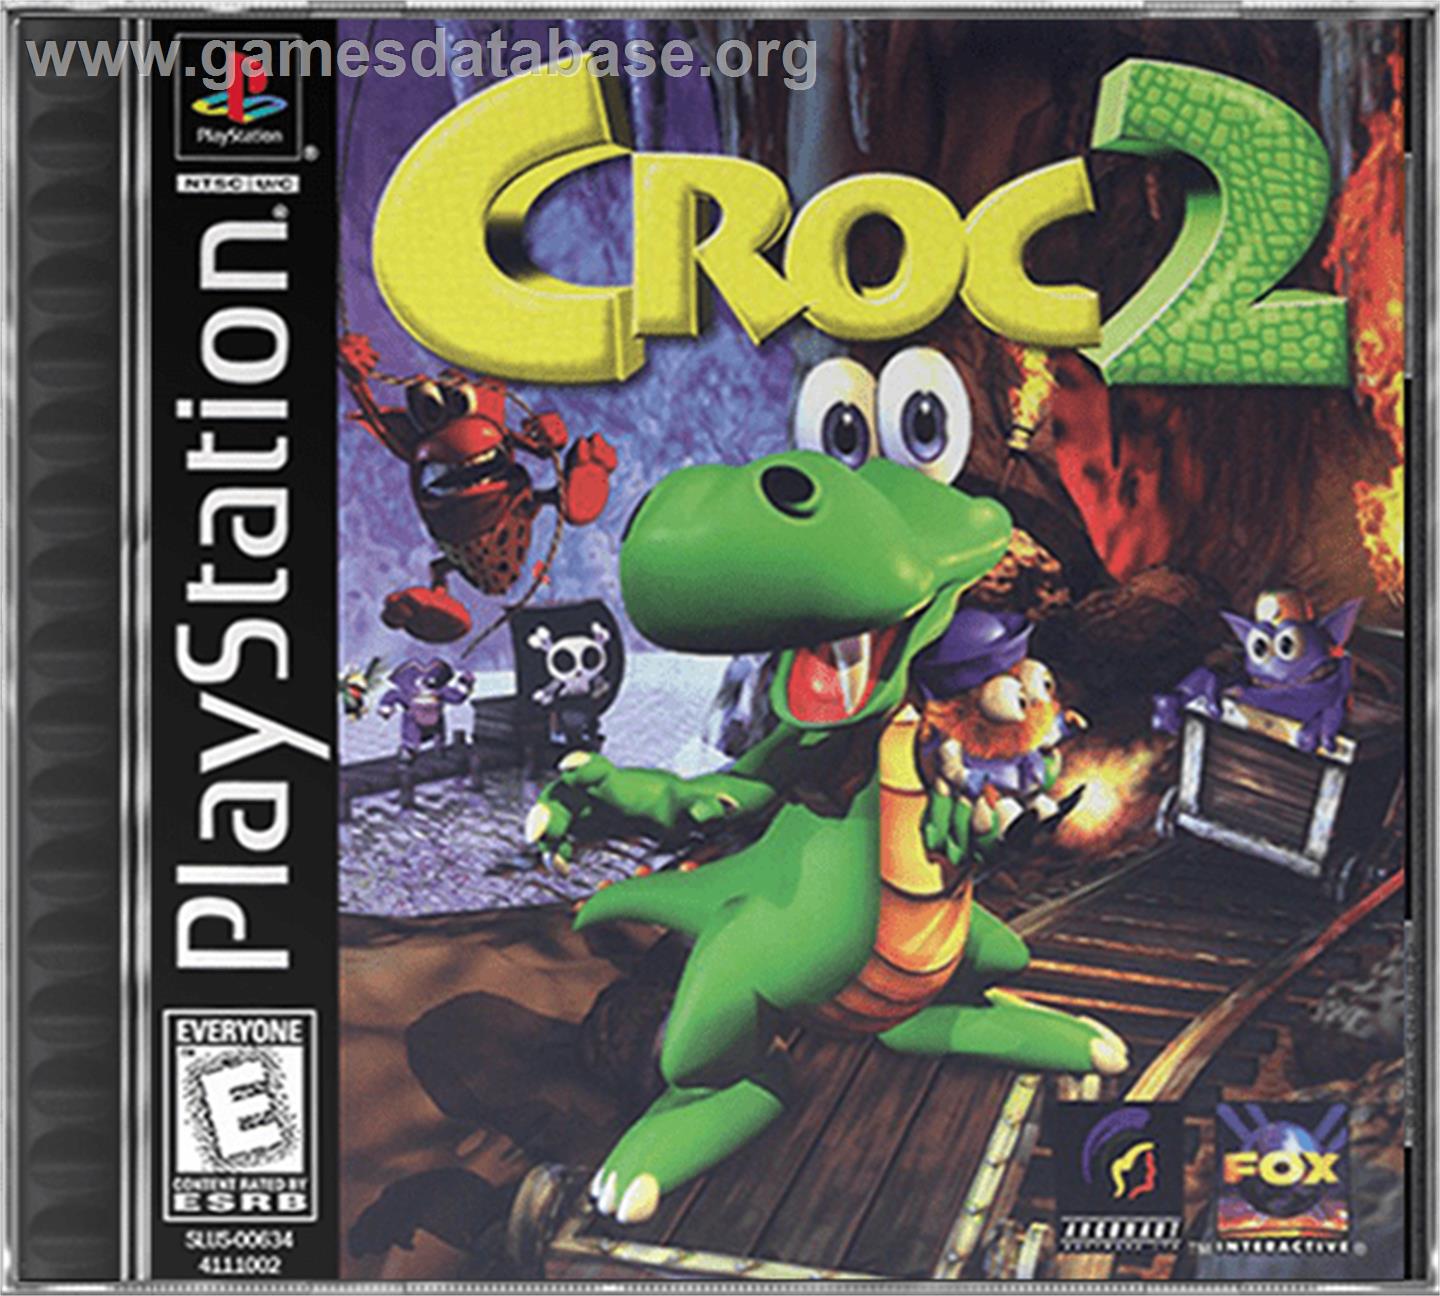 Croc 2 - Sony Playstation - Artwork - Box